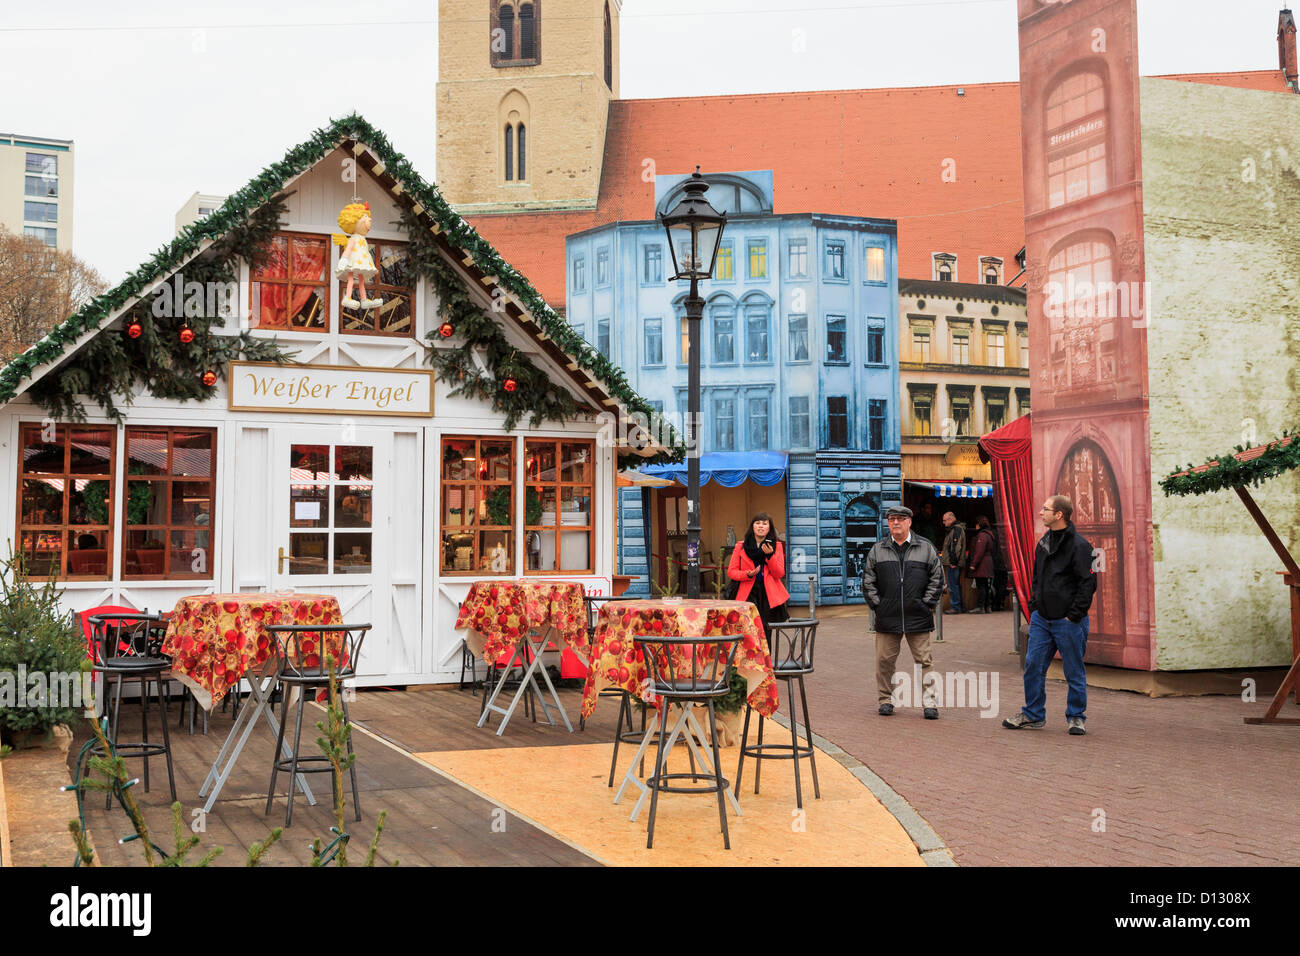 Traditioneller Weihnachtsmarkt Stände am Alexanderplatz, Berlin City, Deutschland Stockfoto